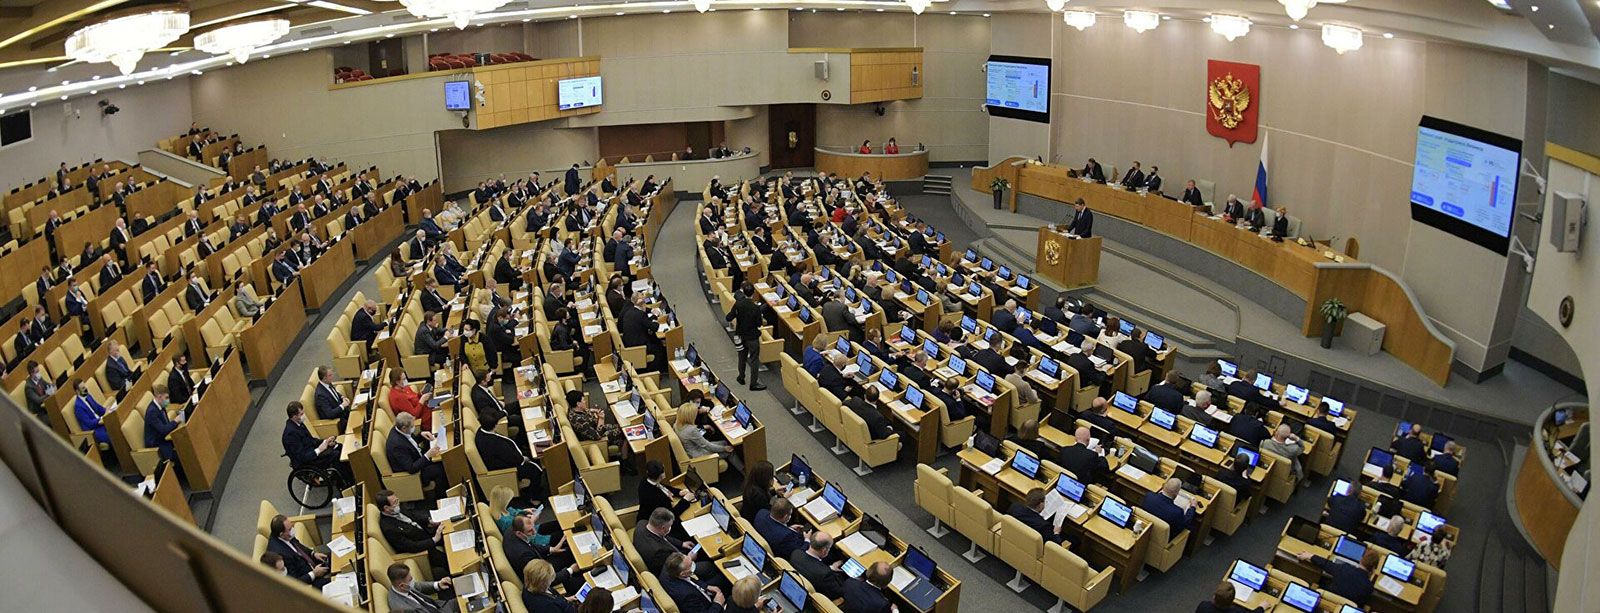 Теперь интернет-реклама подлежит учету: российский законодатель в третьем чтении принял законопроект о внедрении единой информационной учетной системы